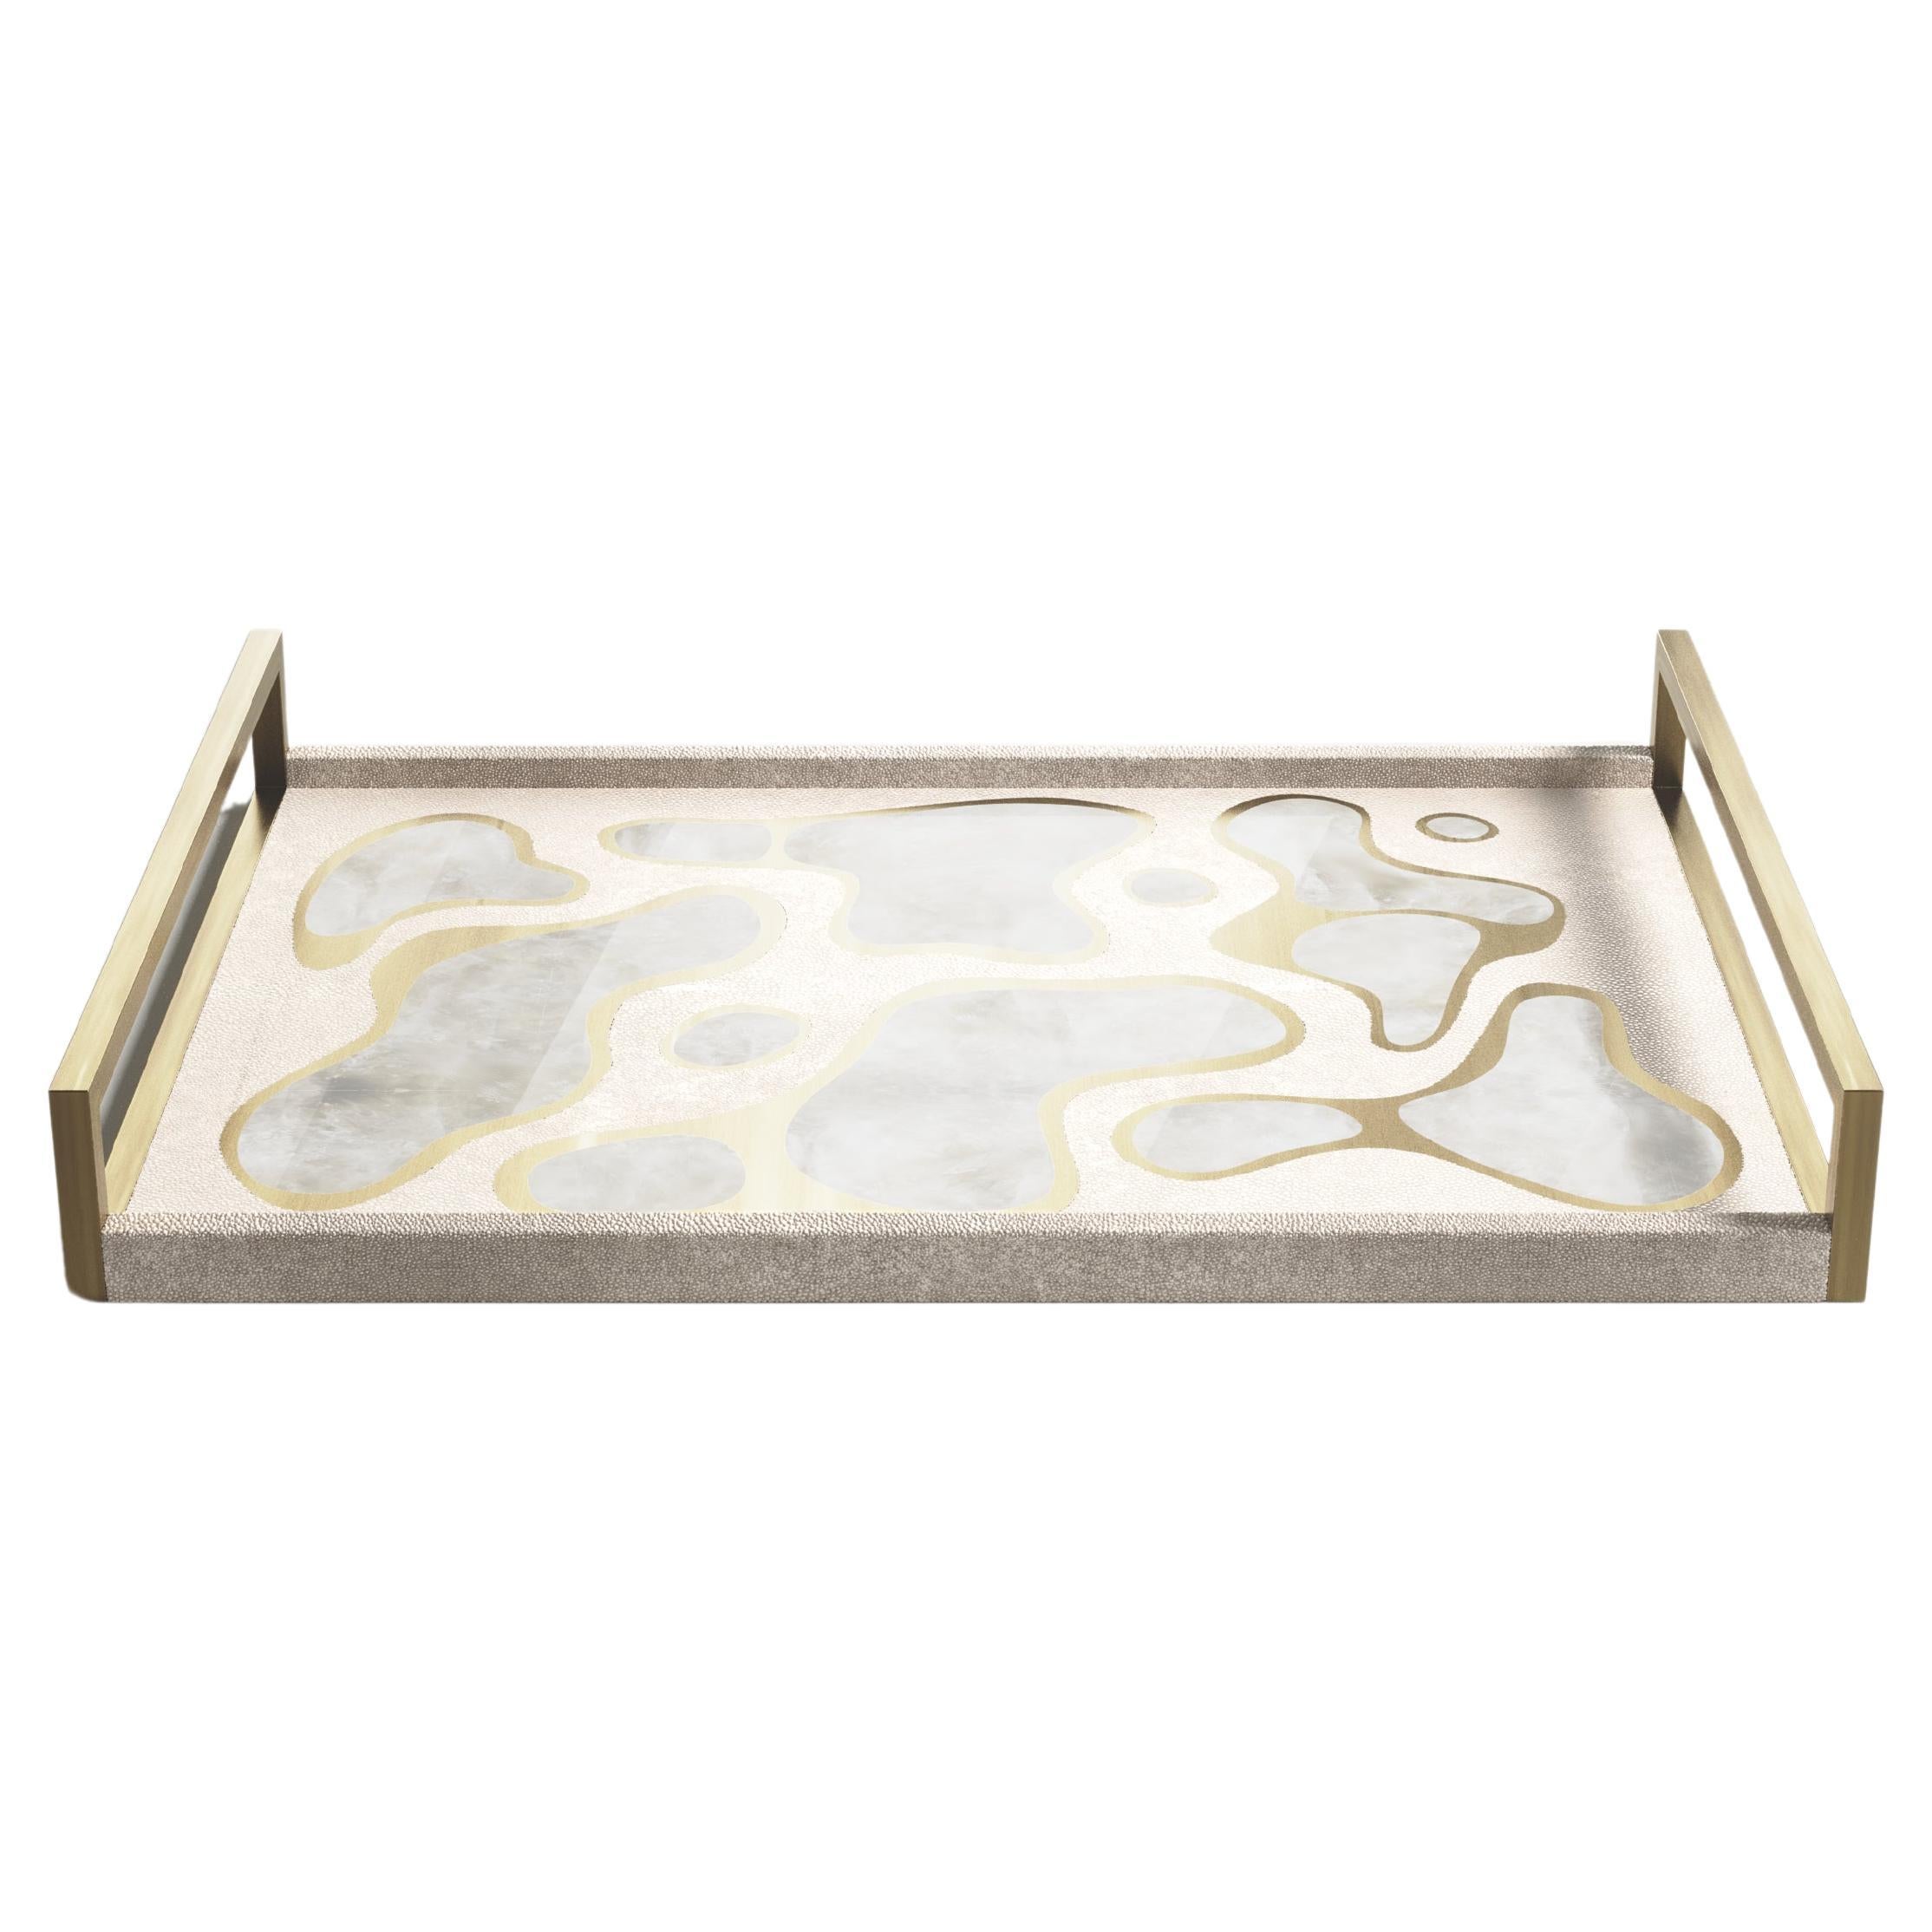 Plateau rectangulaire en galuchat crème avec laiton Bronze-Patina de Kifu Paris